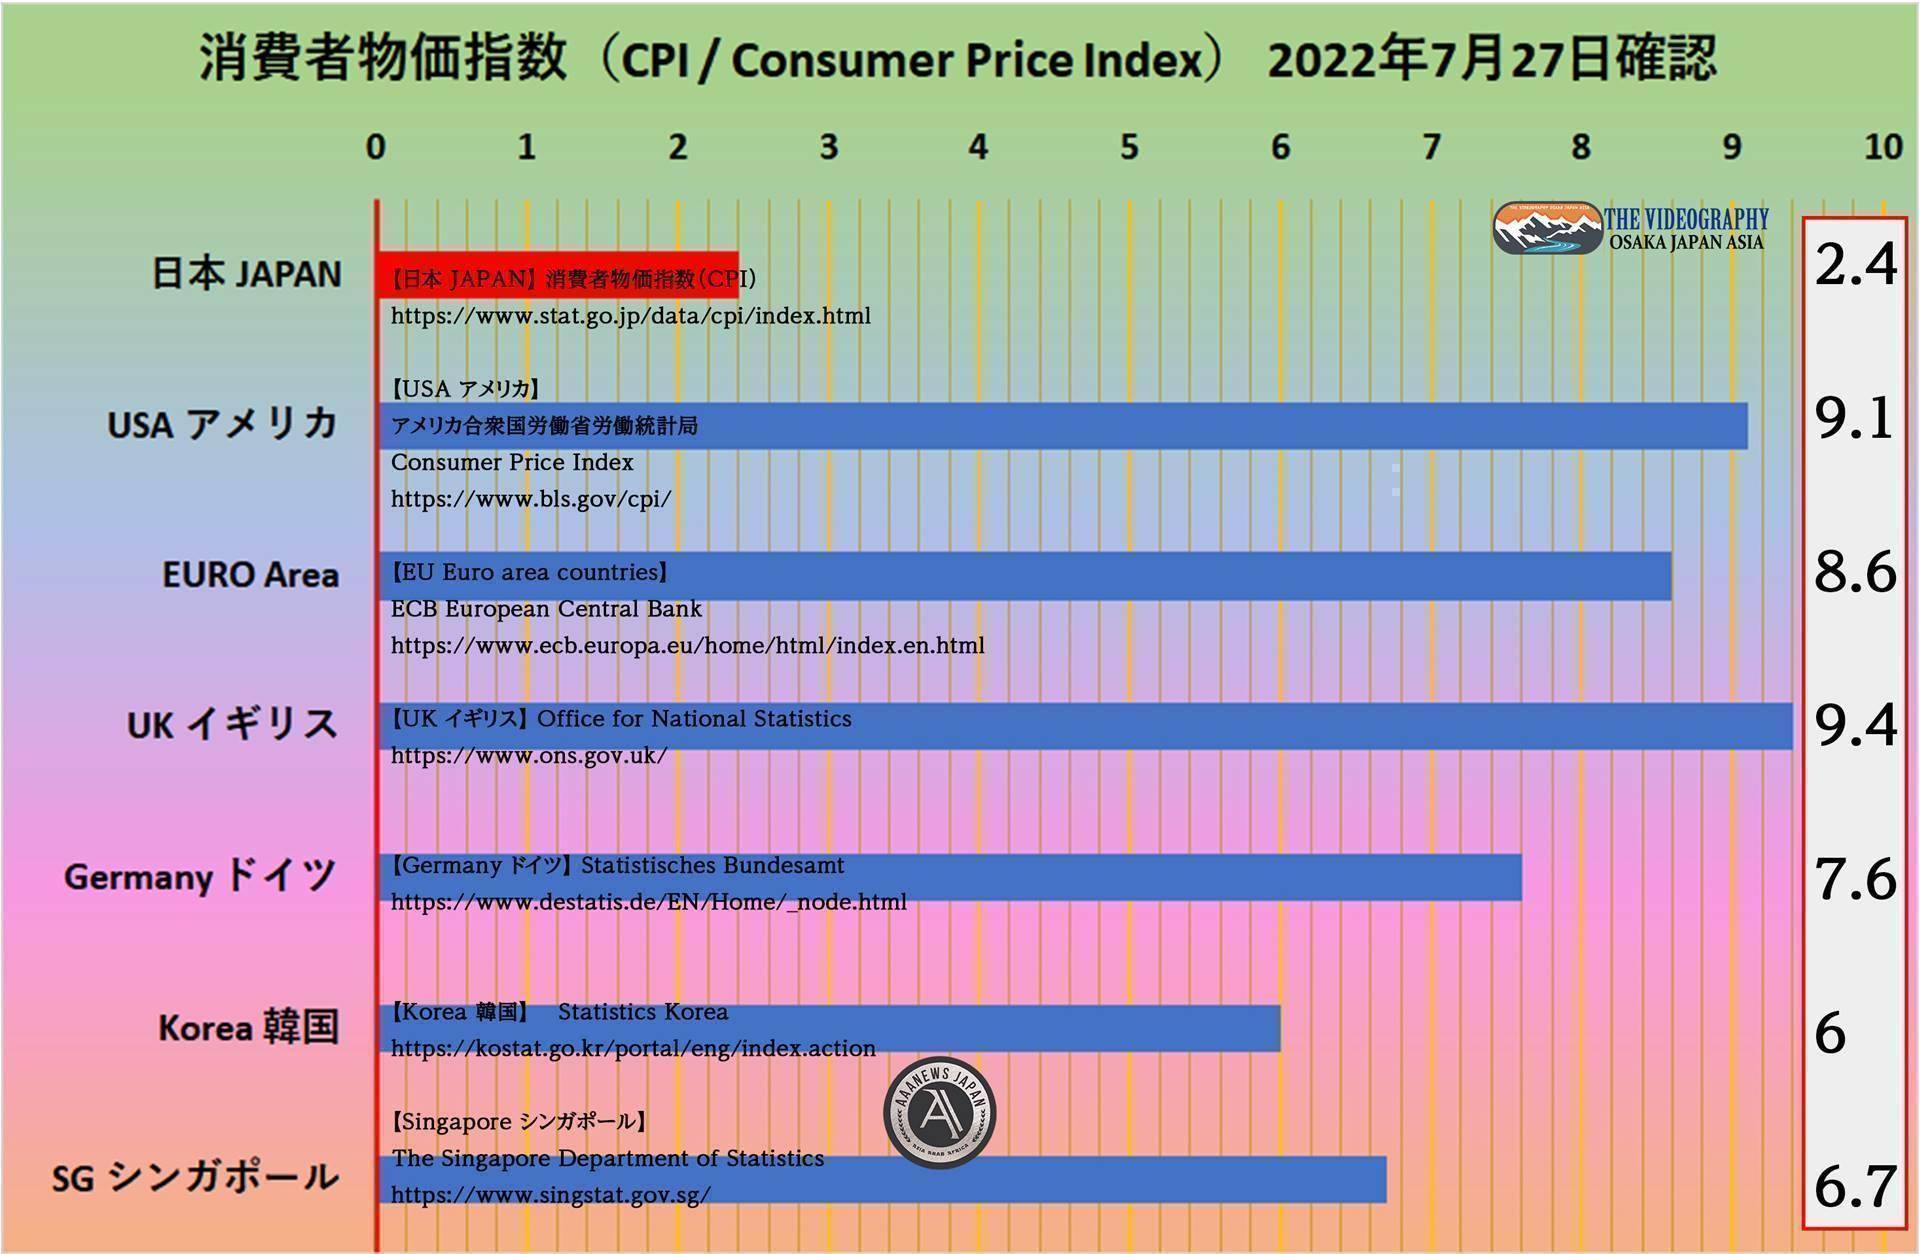 世界の消費者物価指数（CPI / Consumer Price Index） 総合指数・日本 2.4%、アメリカ 9.1%、イギリス 9.1%、ドイツ 7.6%、韓国 6.0%、シンガポール 5.6%。